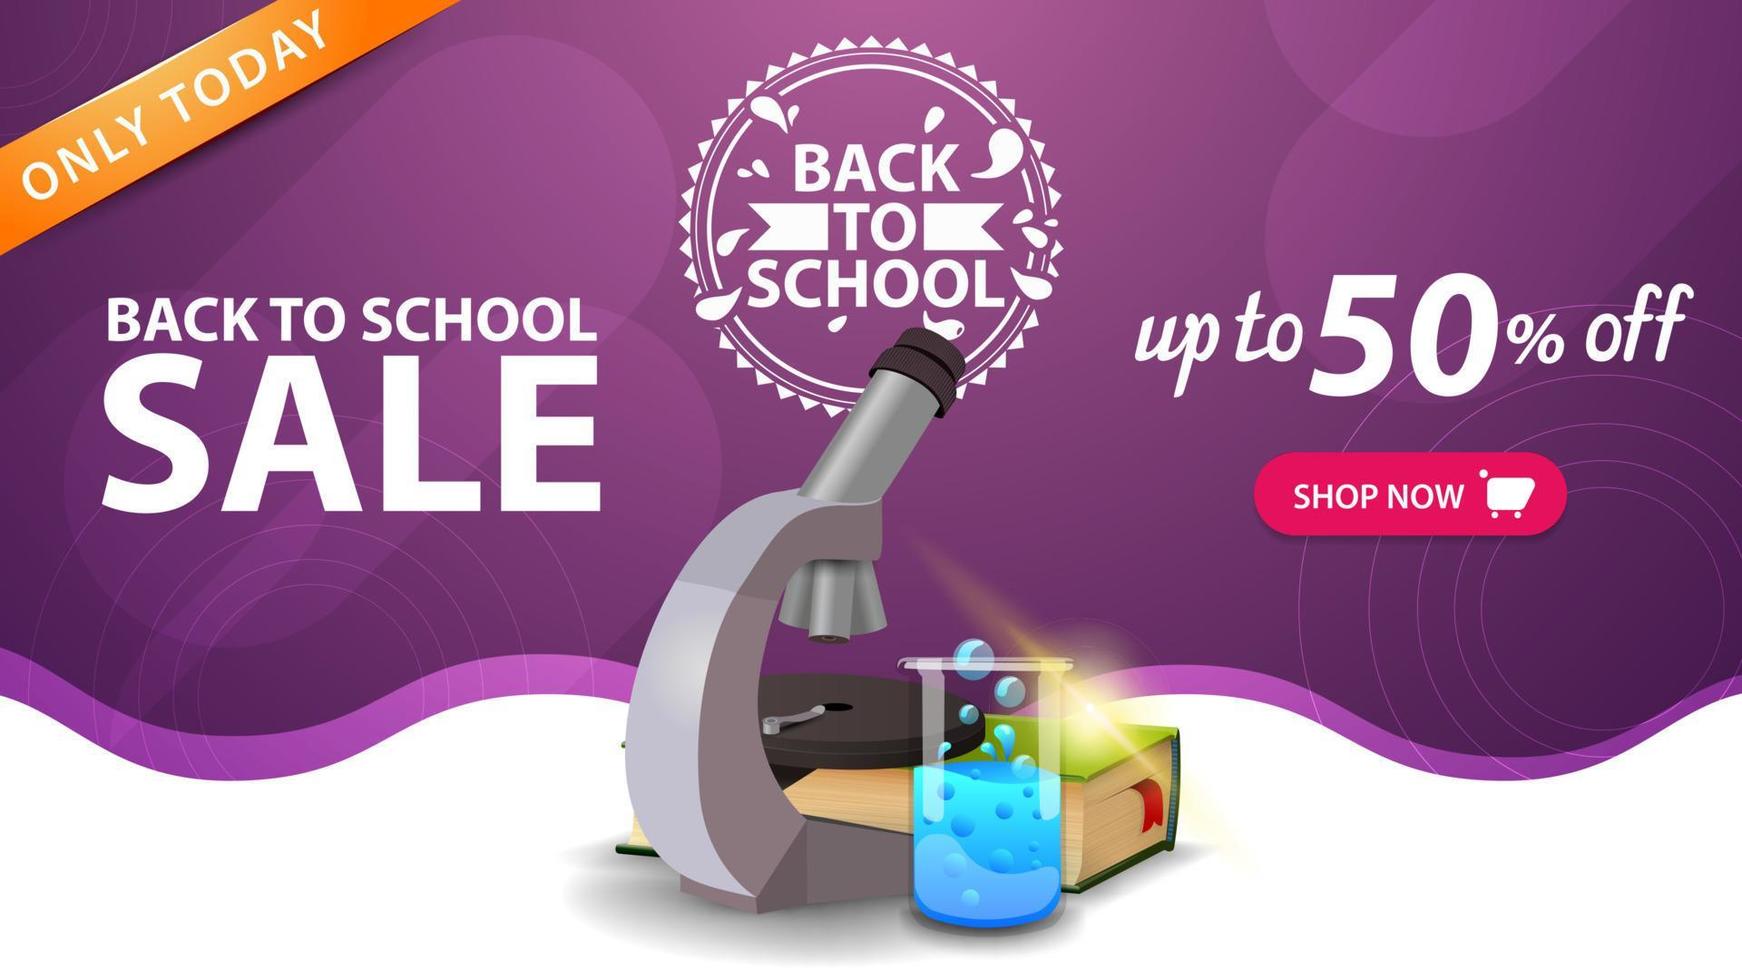 venta de regreso a la escuela, plantilla de banner web púrpura con botón, microscopio, libros y matraz químico vector